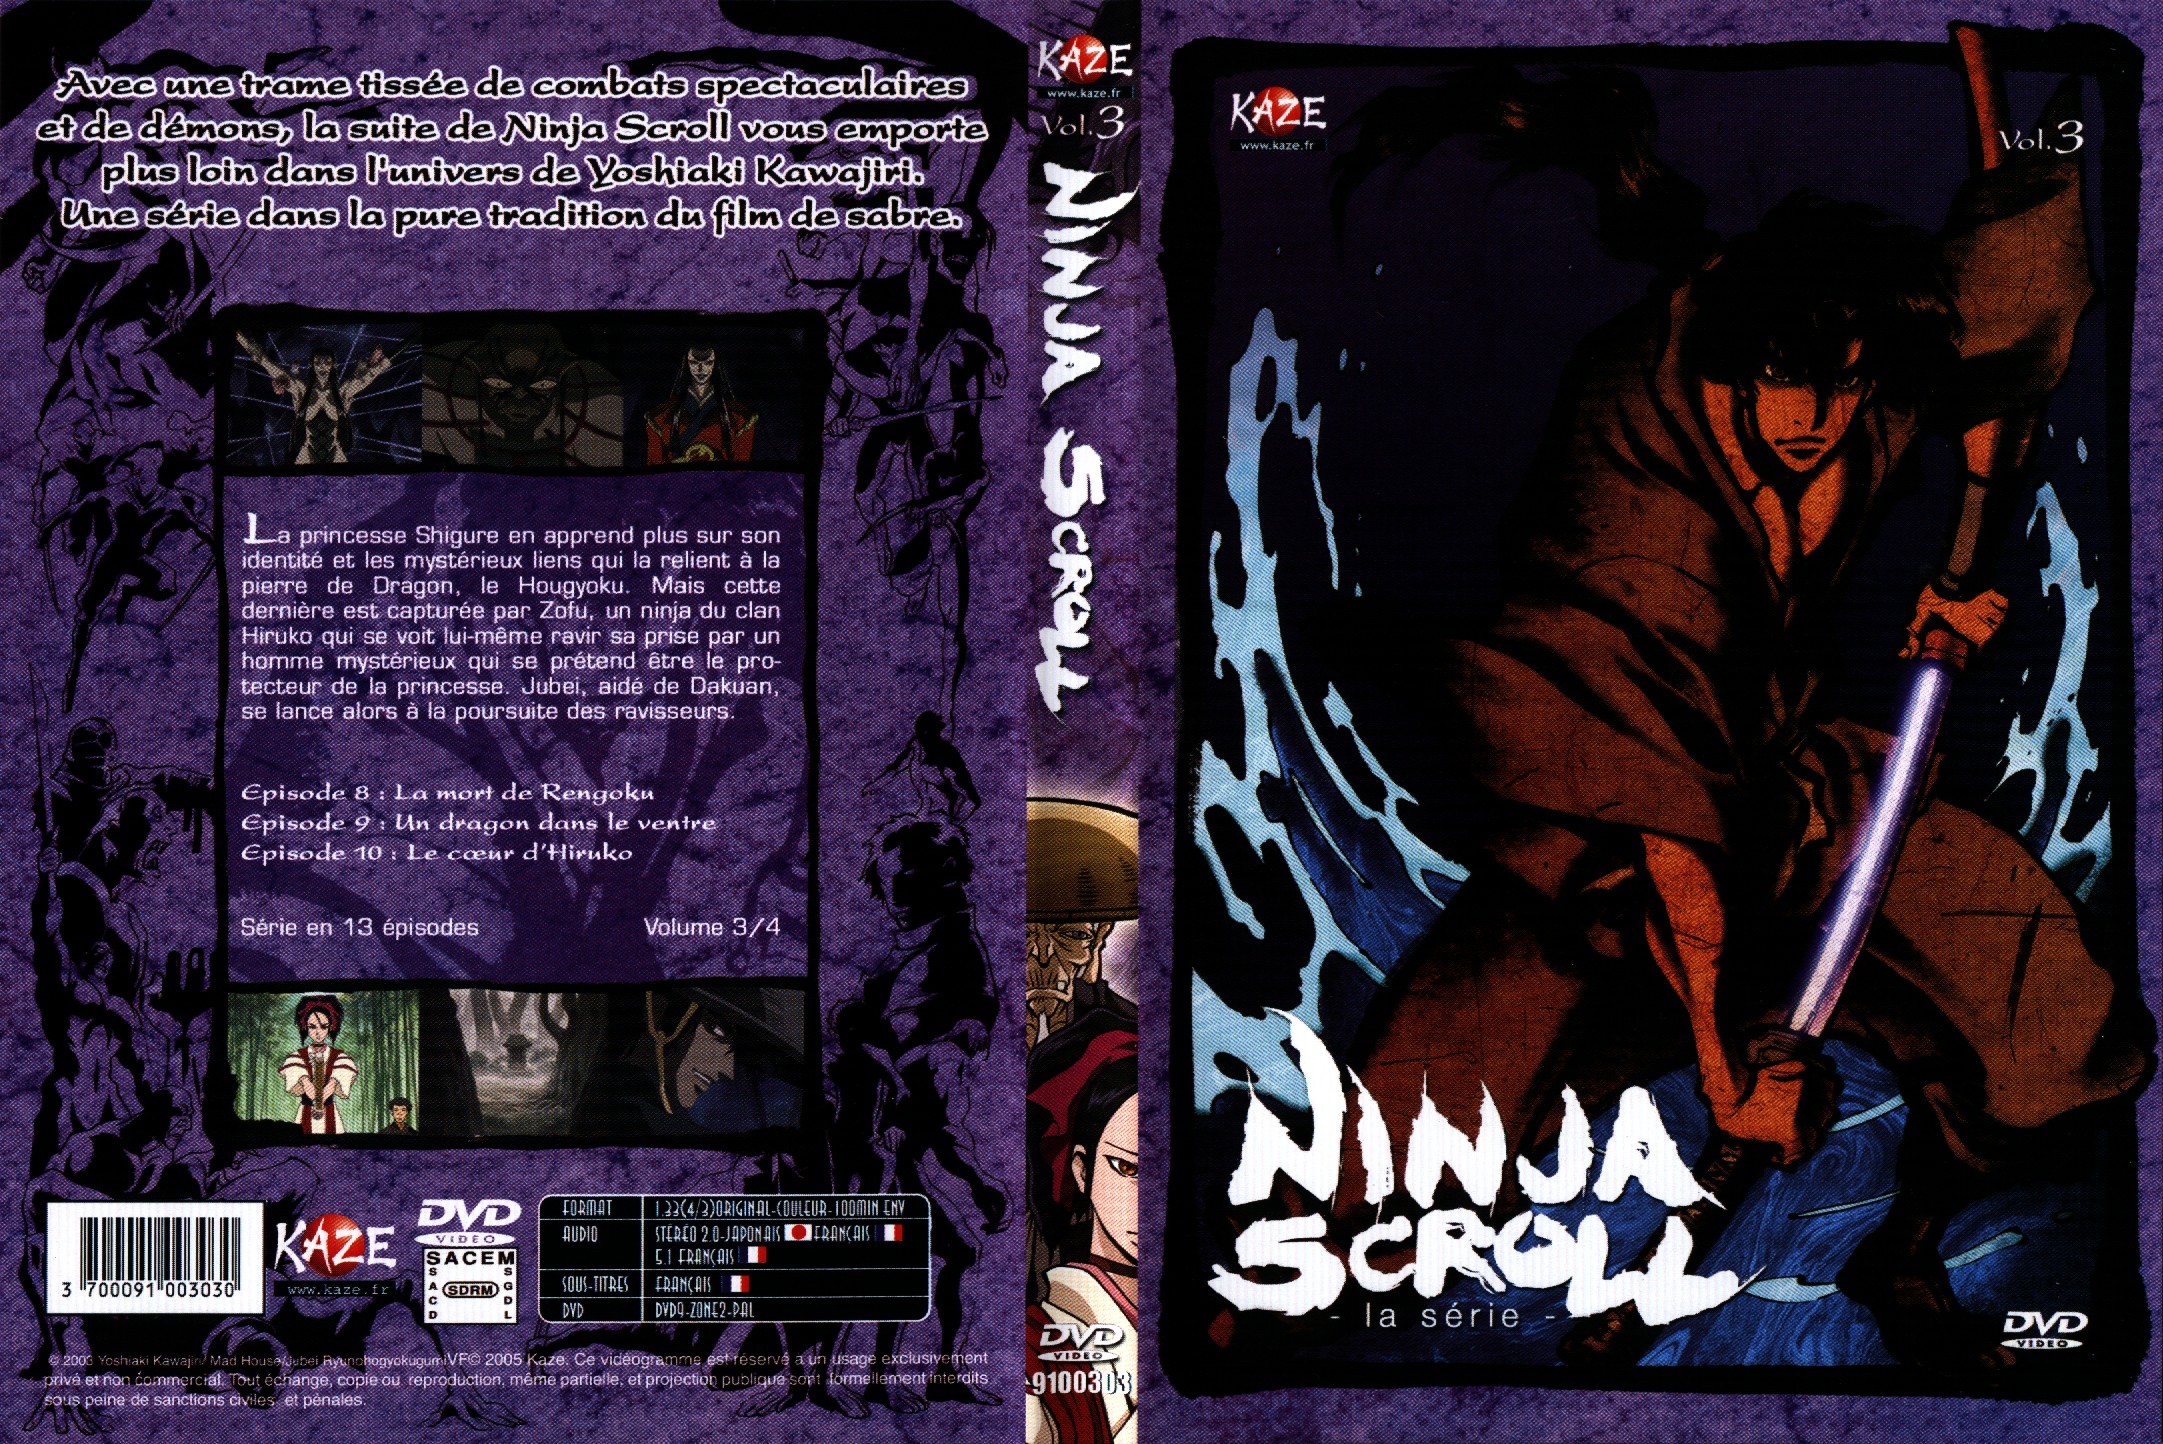 Jaquette DVD Ninja scroll la srie vol 3